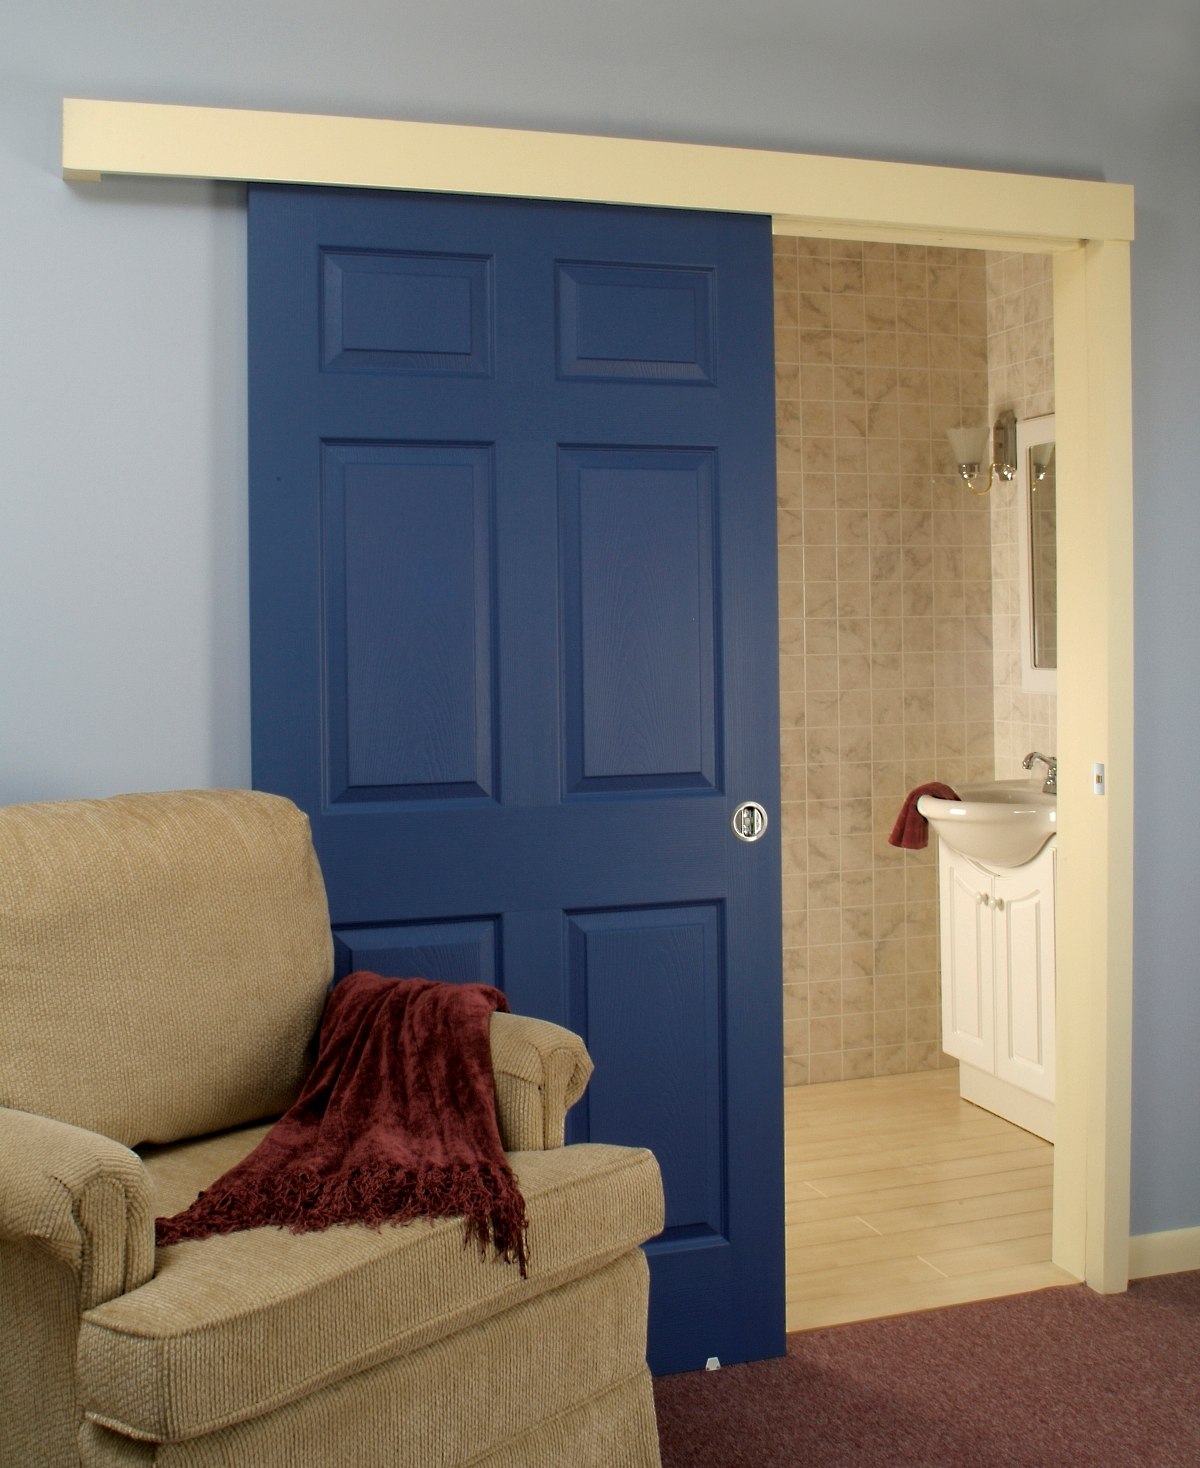 Дверь толще стены. Двери в интерьере. Раздвижные двери в интерьере. Синие двери в интерьере. Цветные двери в интерьере.